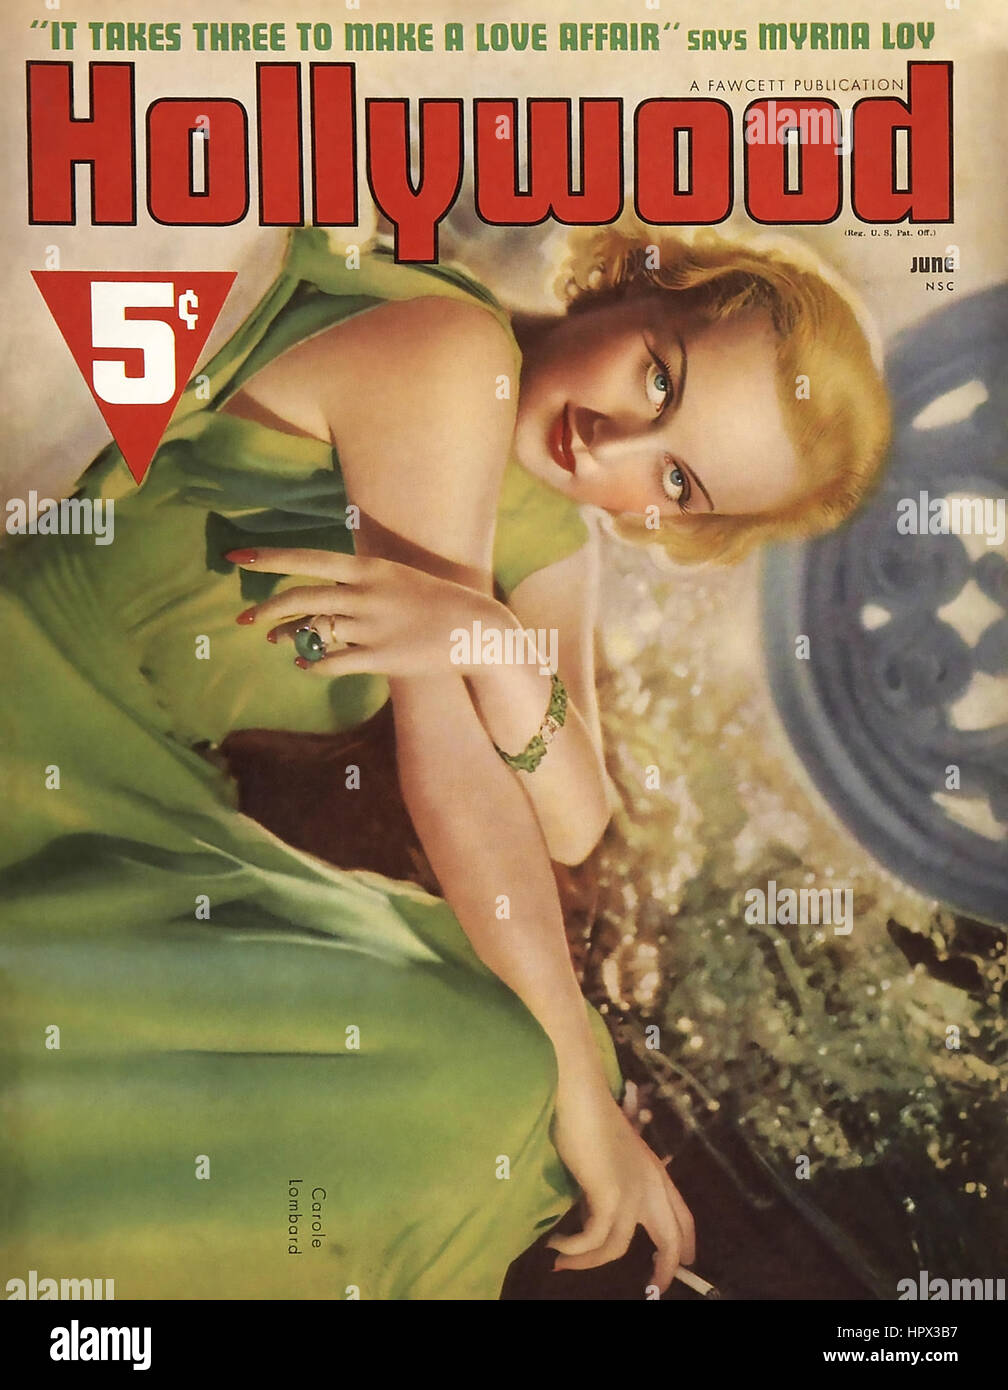 CAROLE Lombard (1908-1942) Actrice américaine sur une couverture de magazine de ventilateur sur 1940 Banque D'Images